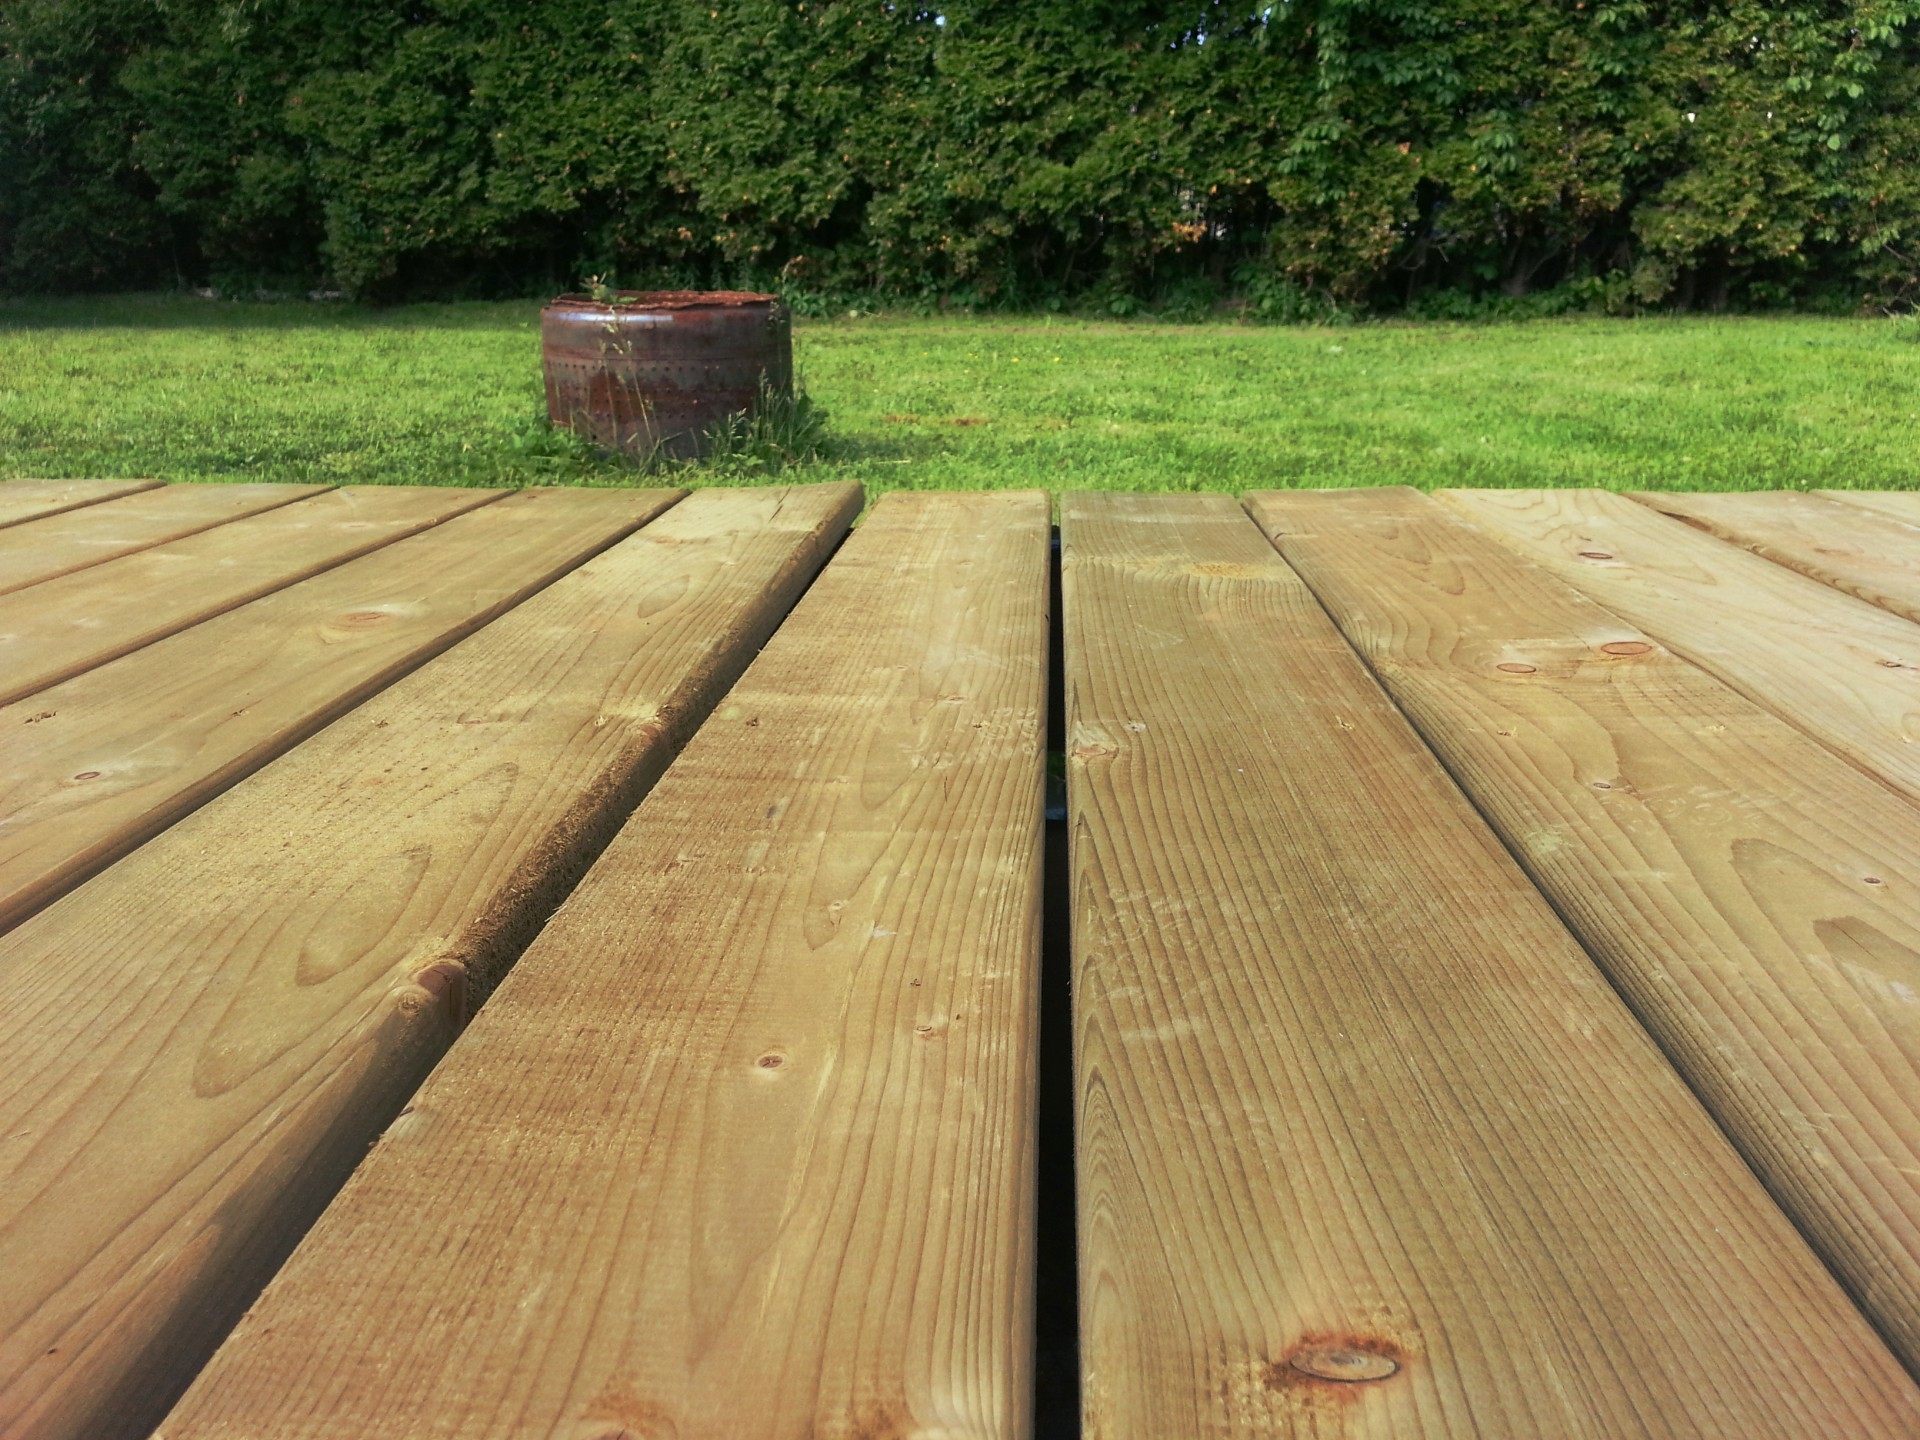 A wooden deck next to a grass lawn